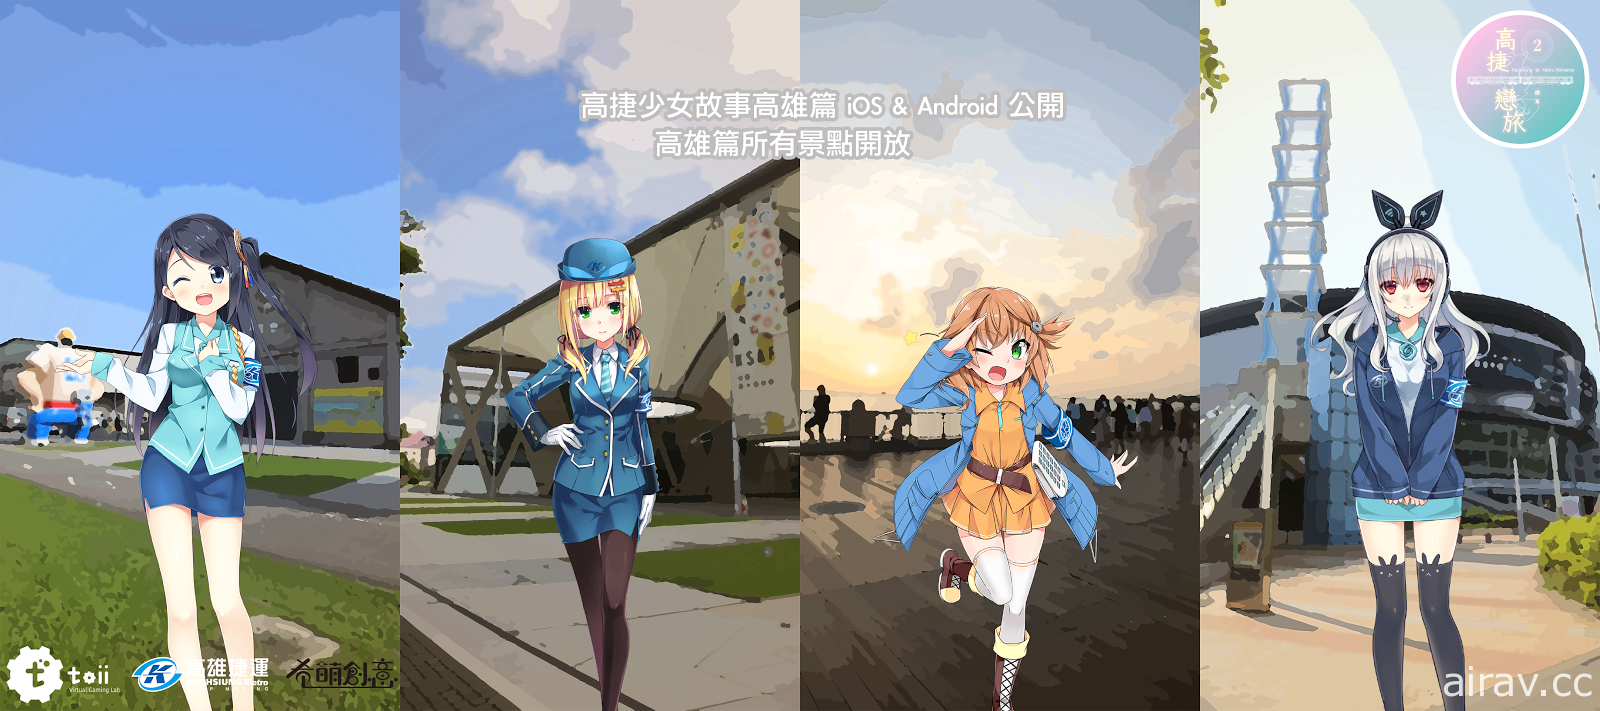 AR 手机游戏《 高捷恋旅 2》推出博多运河城篇新角色“小绿”以及全新故事